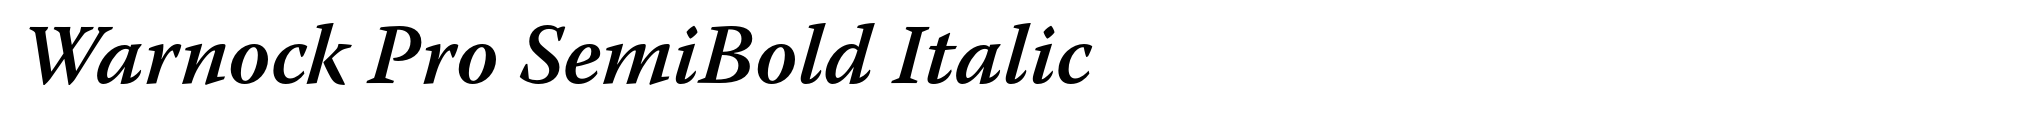 Warnock Pro SemiBold Italic image